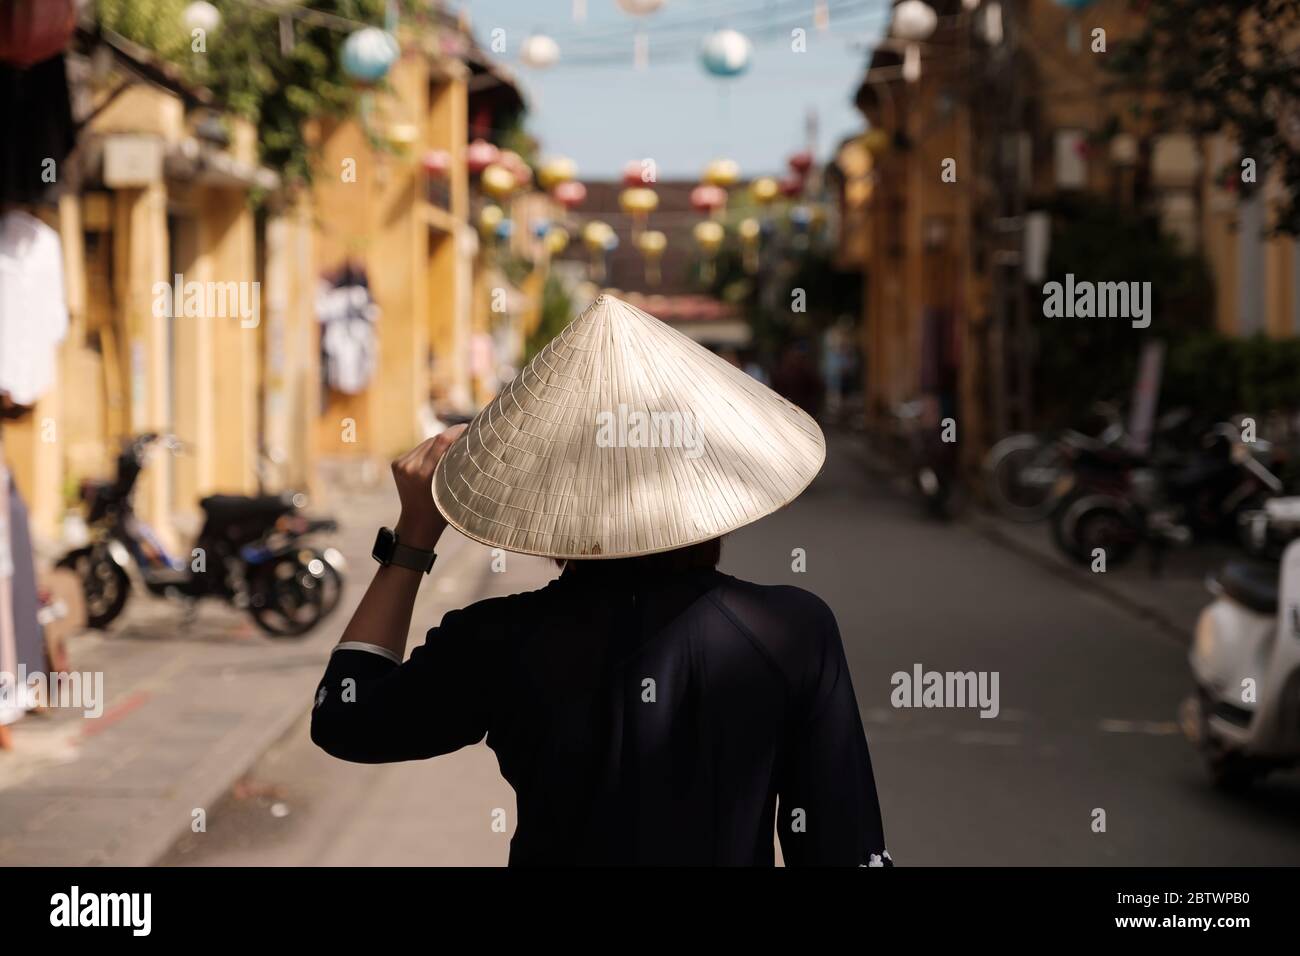 Hermosa niña que lleva sombrero de vietnam o Non la y visita turística en el pueblo Heritage en Hoi An ciudad en Vietnam Foto de stock